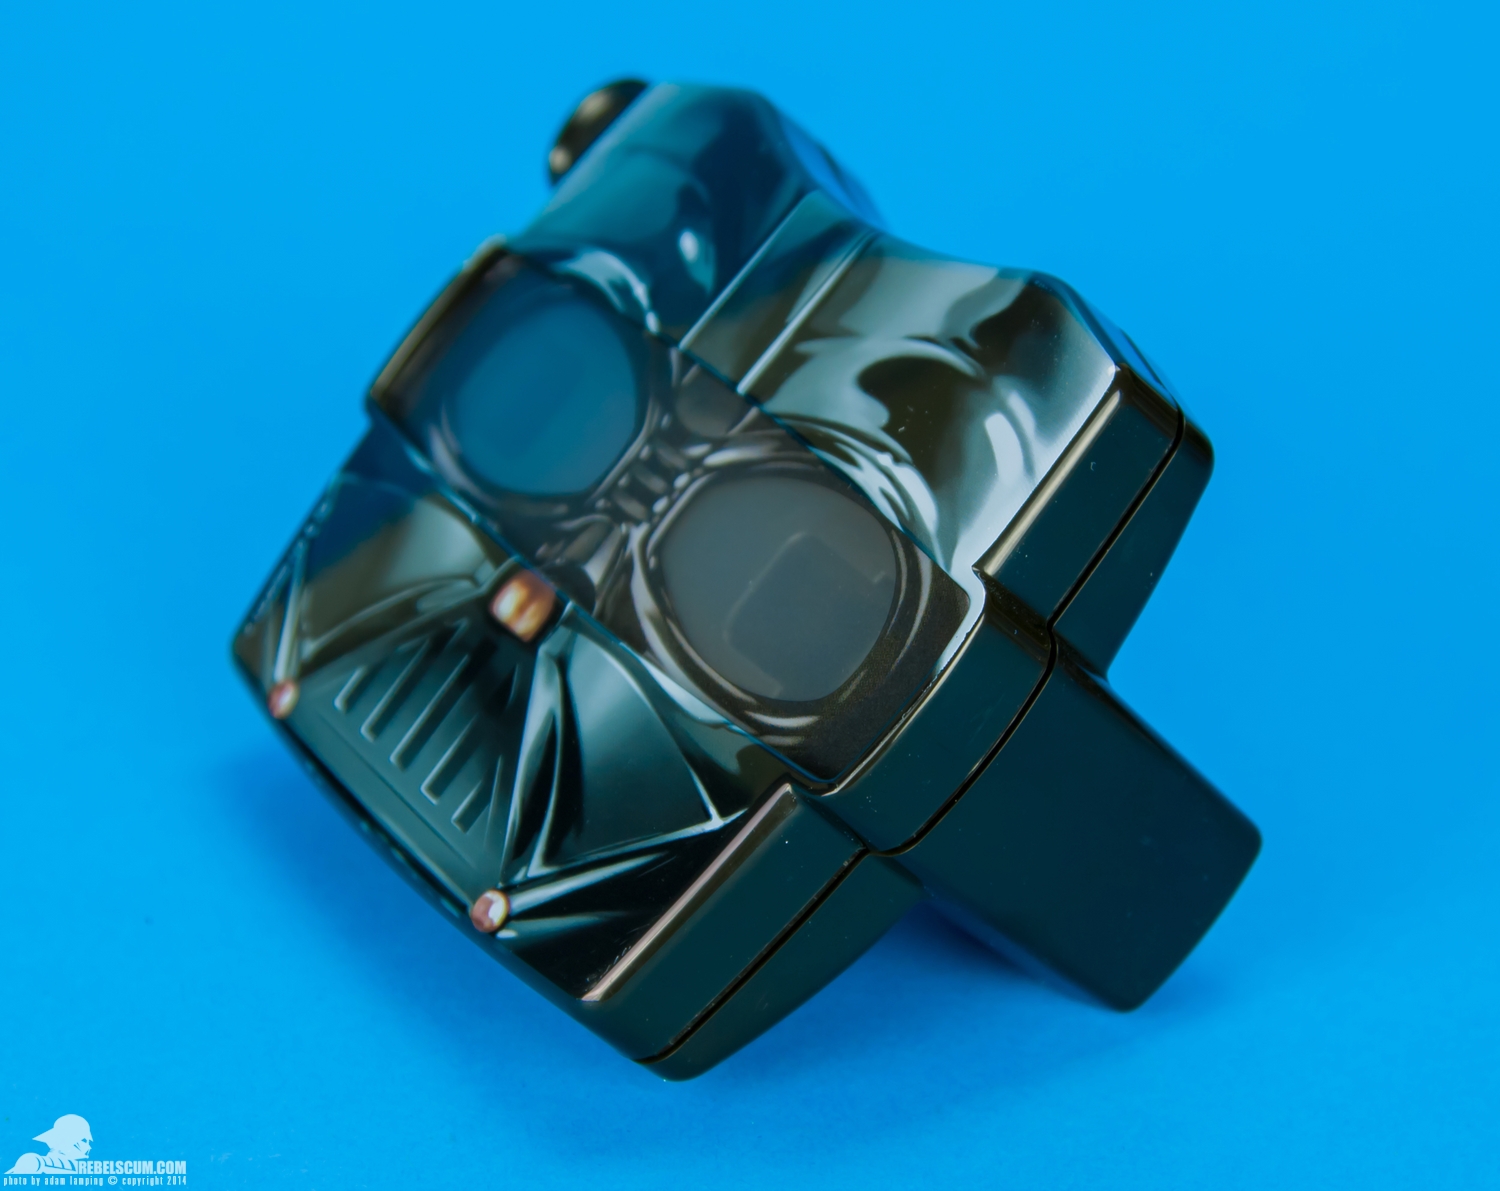 View-Master-Star-Wars-Darth-Vader-3D-Viewer-Gift-Set-003.jpg